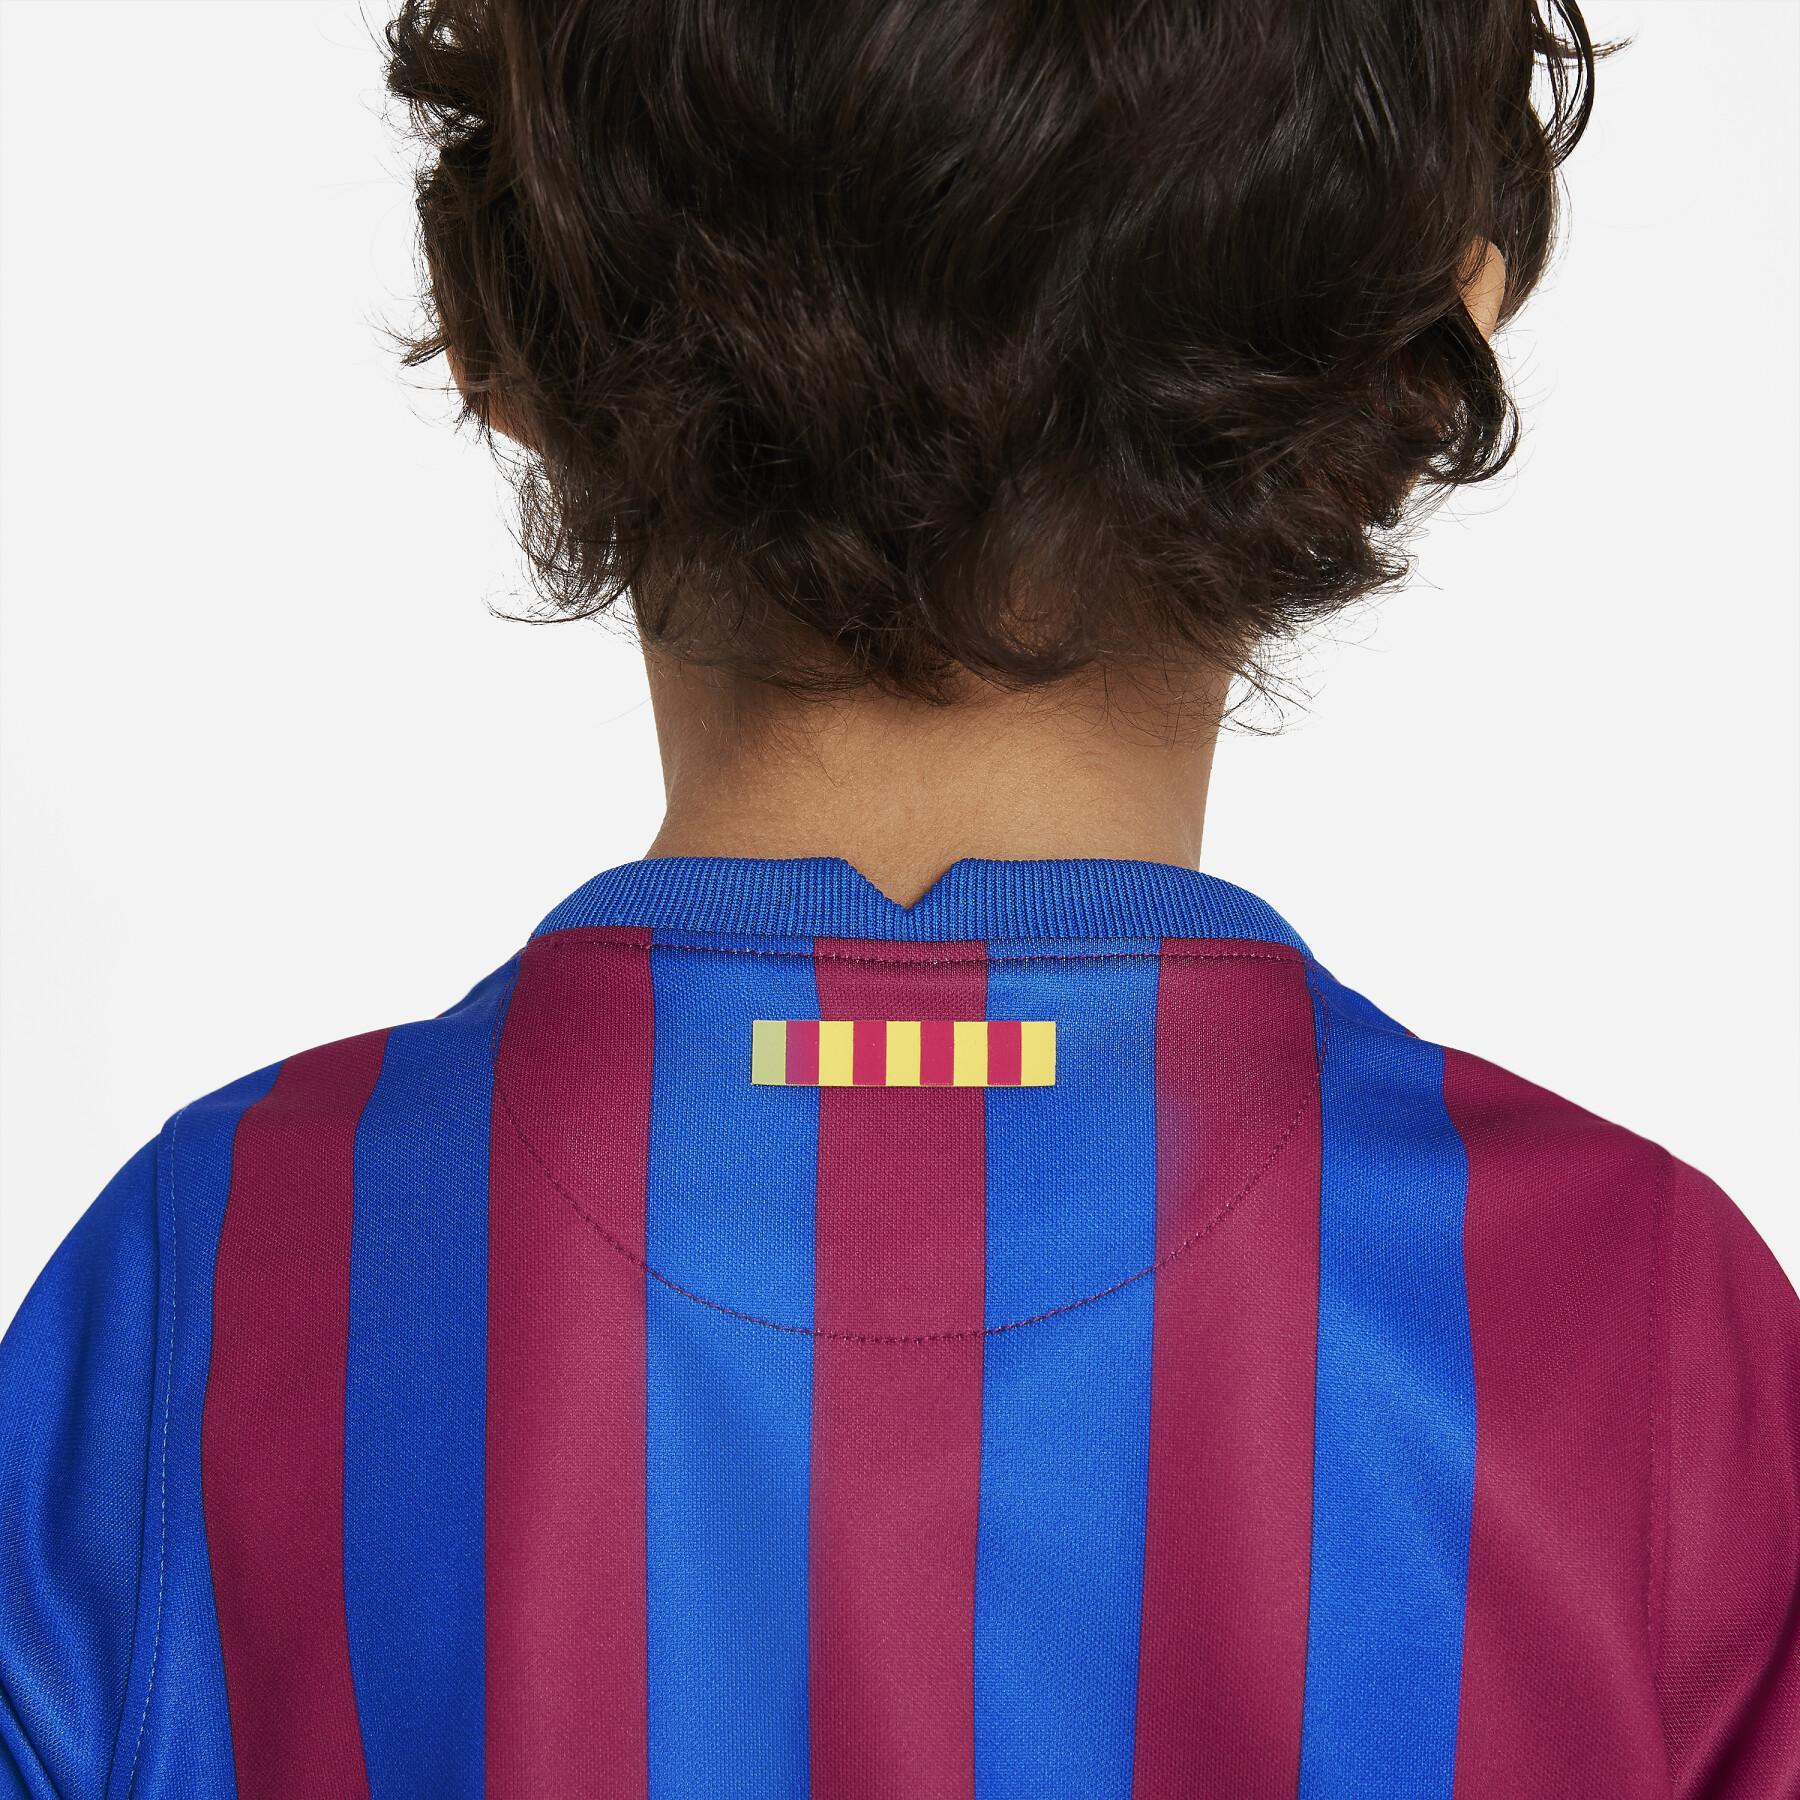 Abbigliamento home per bambini FC Barcelone 2021/22 LK